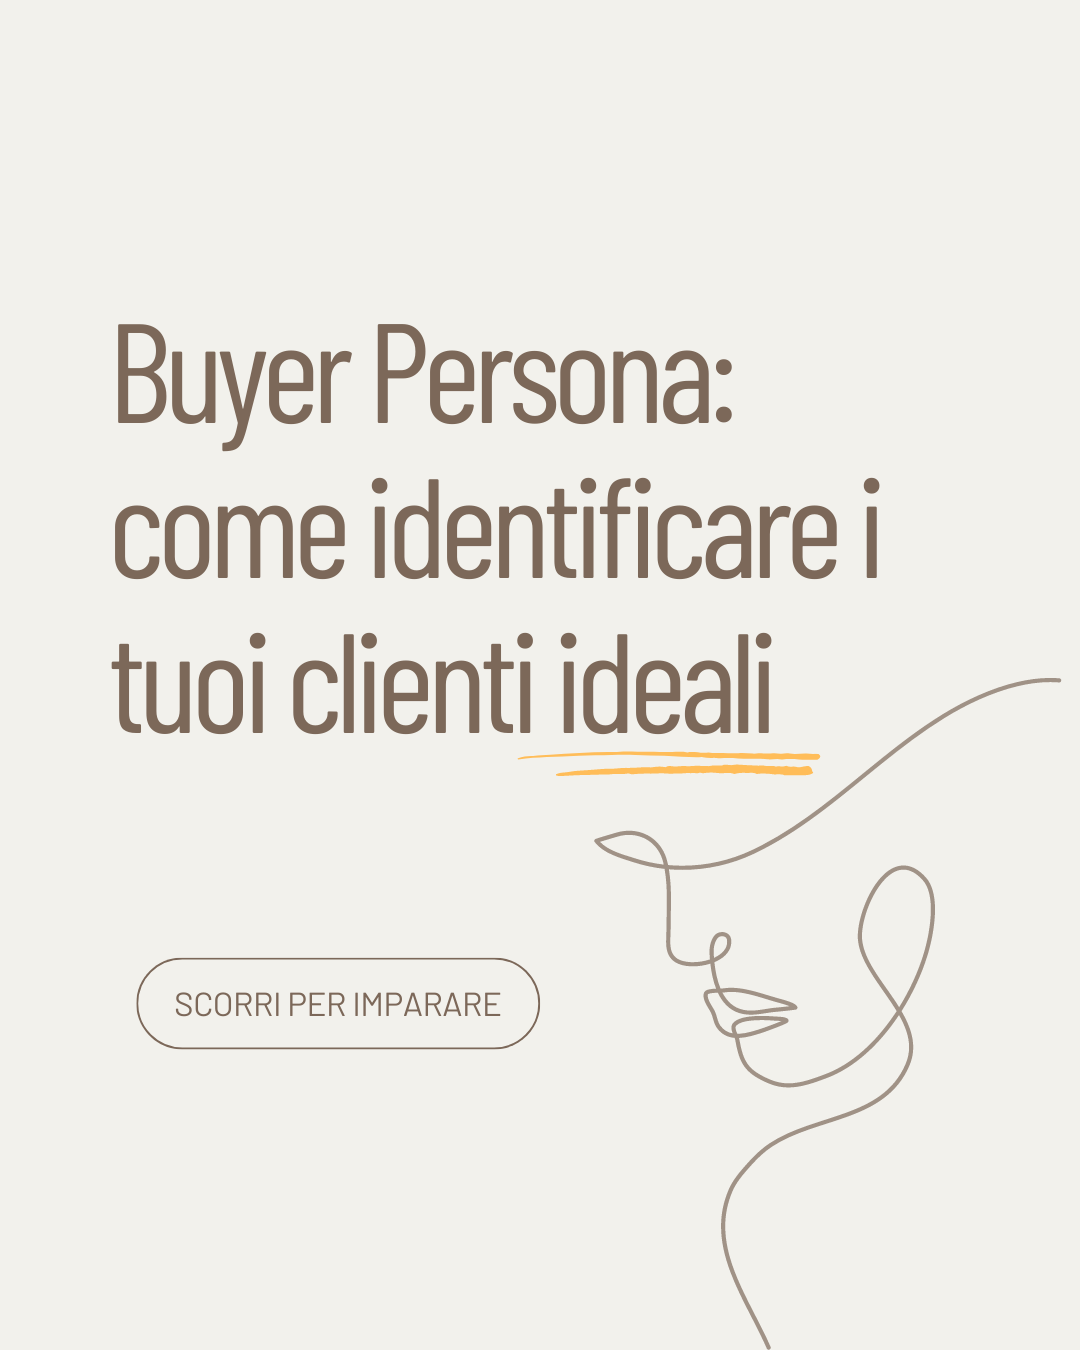 Buyer persona: come identificare i tuoi clienti ideali